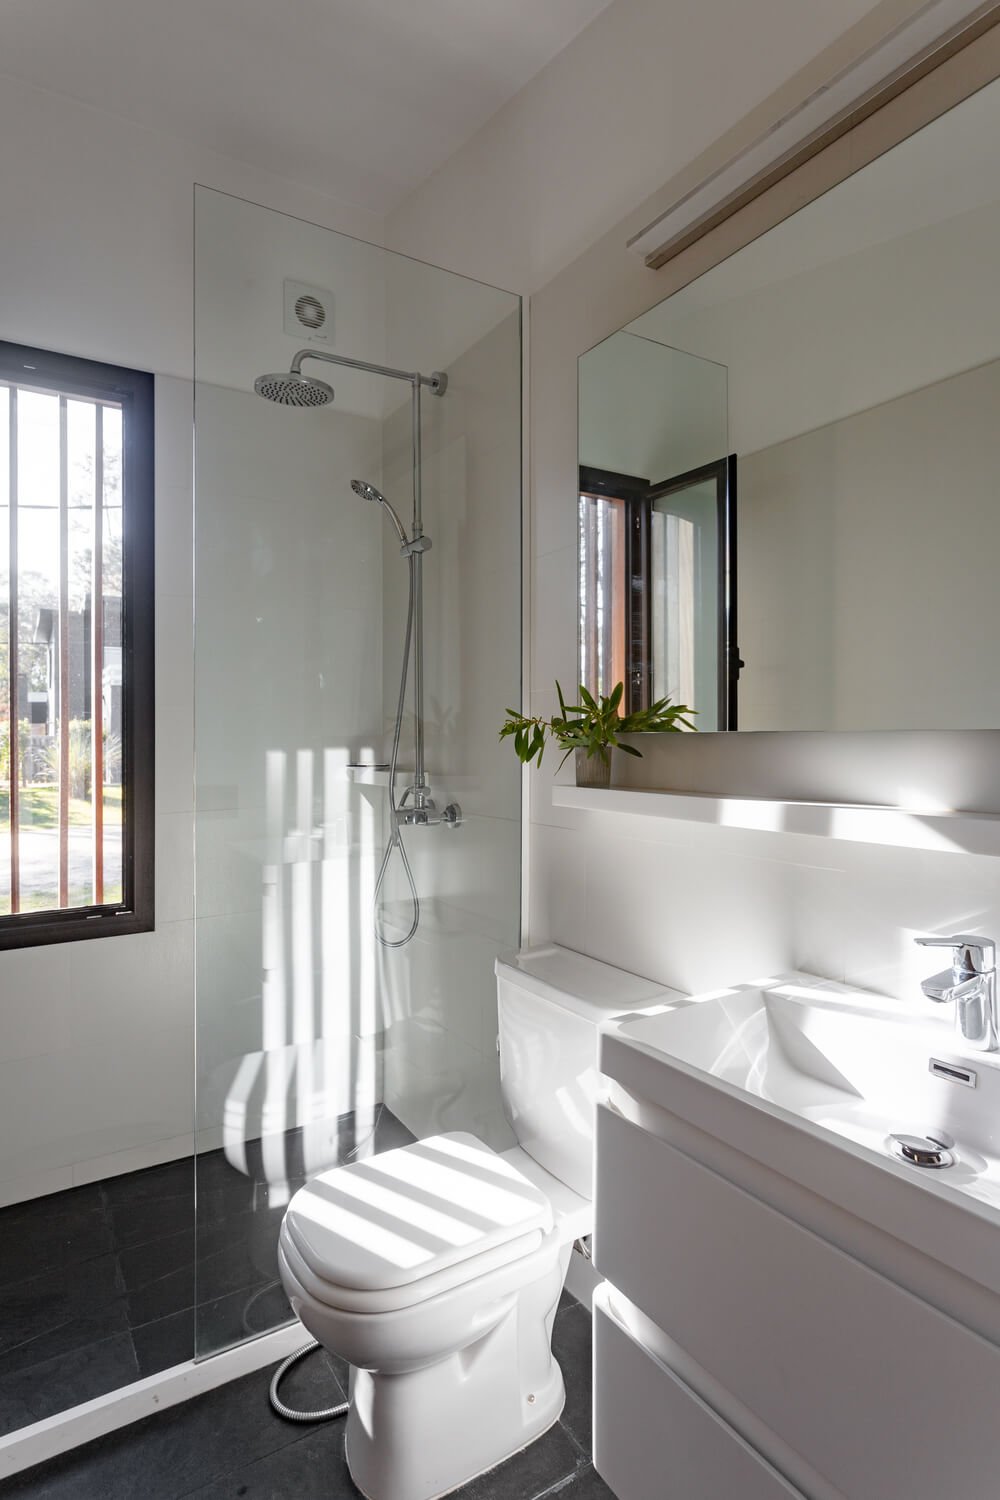 浴室的淋浴区、梳妆台和卫生间都采用了一致的亮白色调，自然光线使其更加明亮。